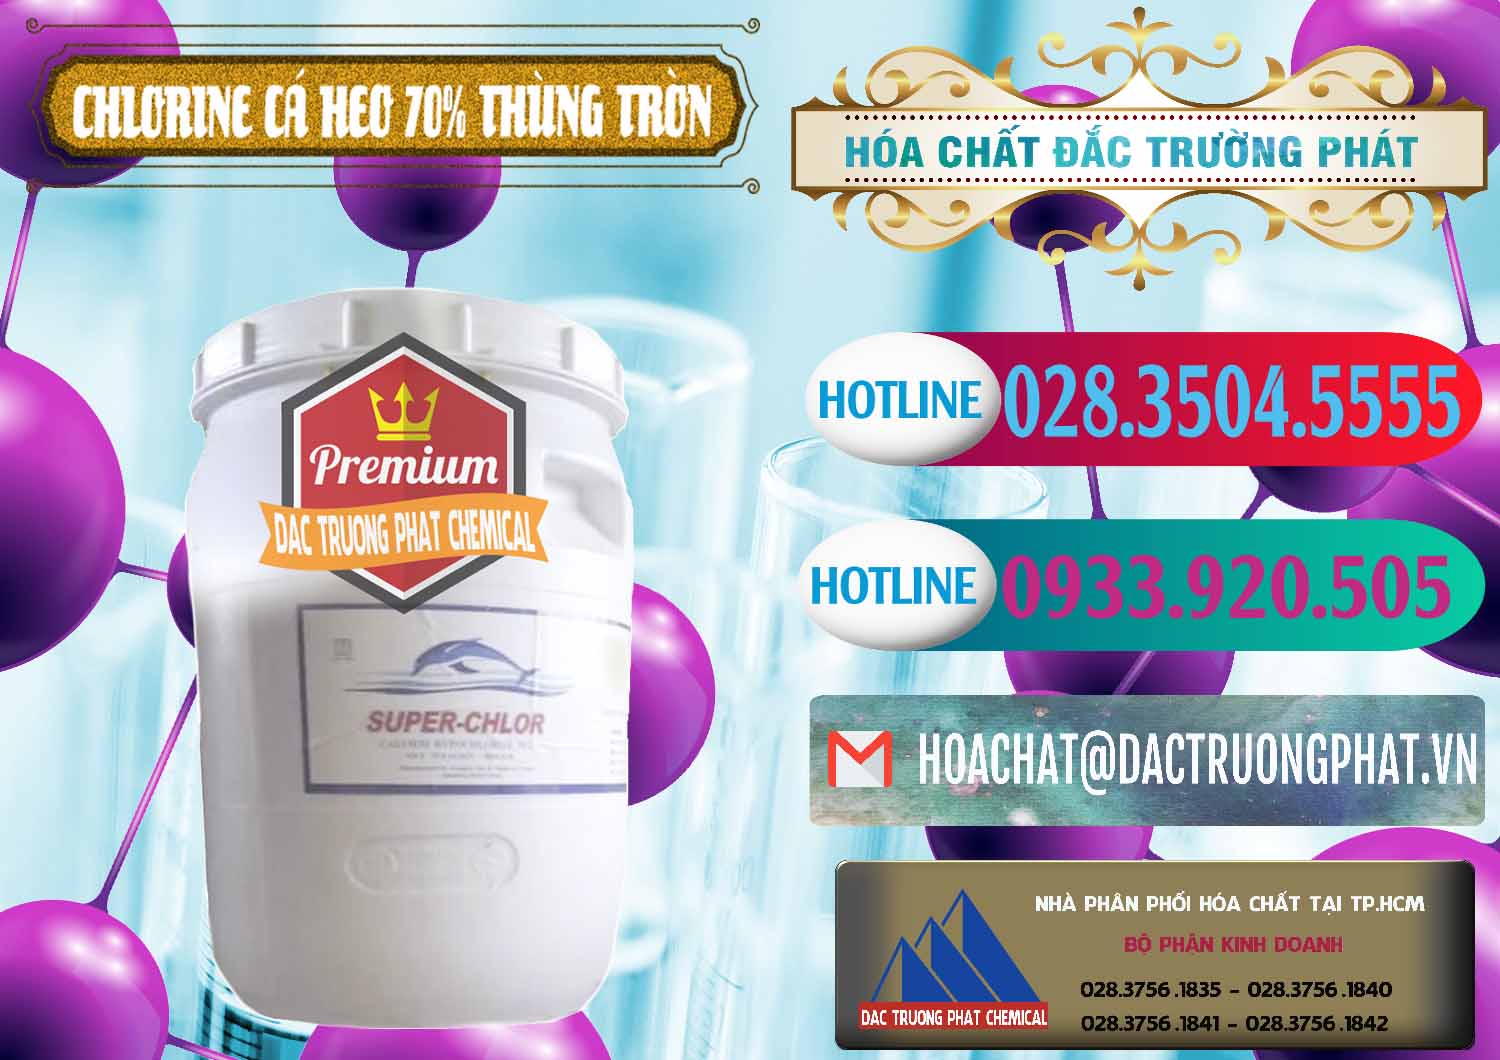 Nơi bán ( cung ứng ) Clorin - Chlorine Cá Heo 70% Super Chlor Thùng Tròn Nắp Trắng Trung Quốc China - 0239 - Đơn vị cung ứng _ phân phối hóa chất tại TP.HCM - truongphat.vn